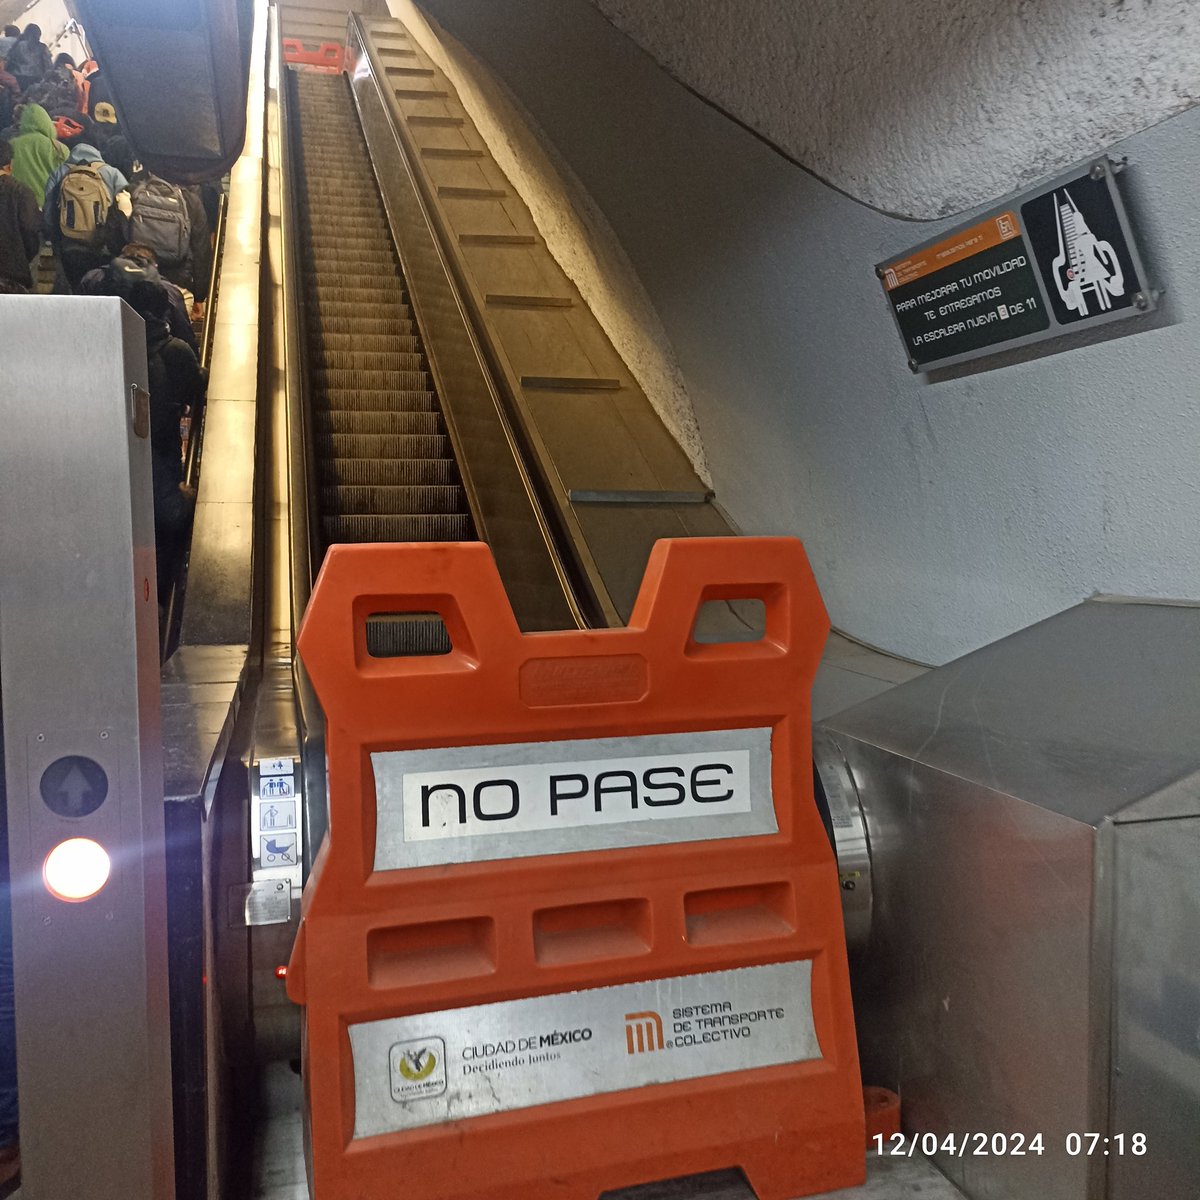 Estan bien padres tus escaleras nuevas @MetroCDMX sin funcionar, pero son nuevas, es lo que importa.